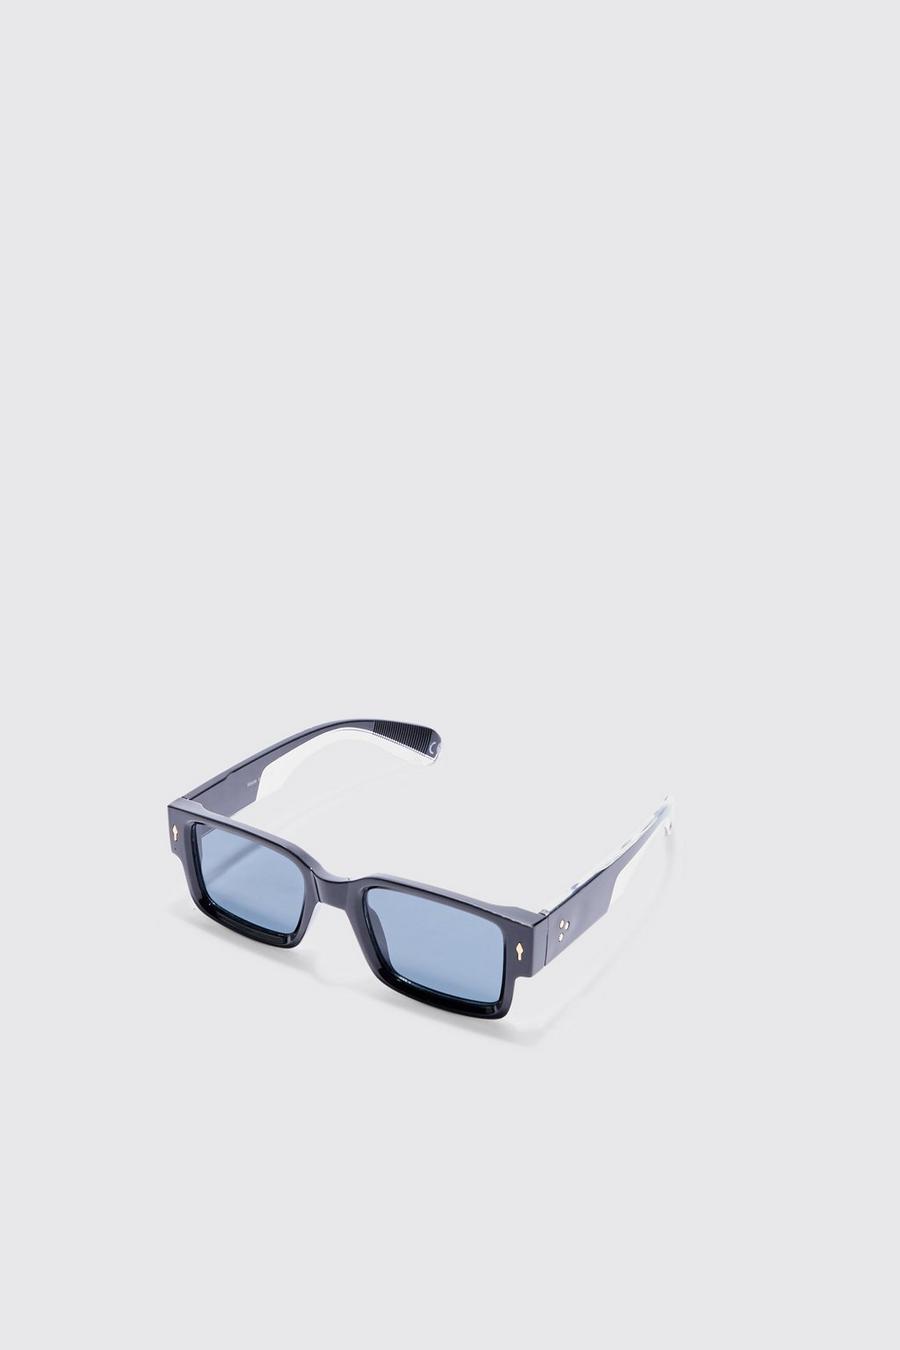 Black Square Plastic Sunglasses